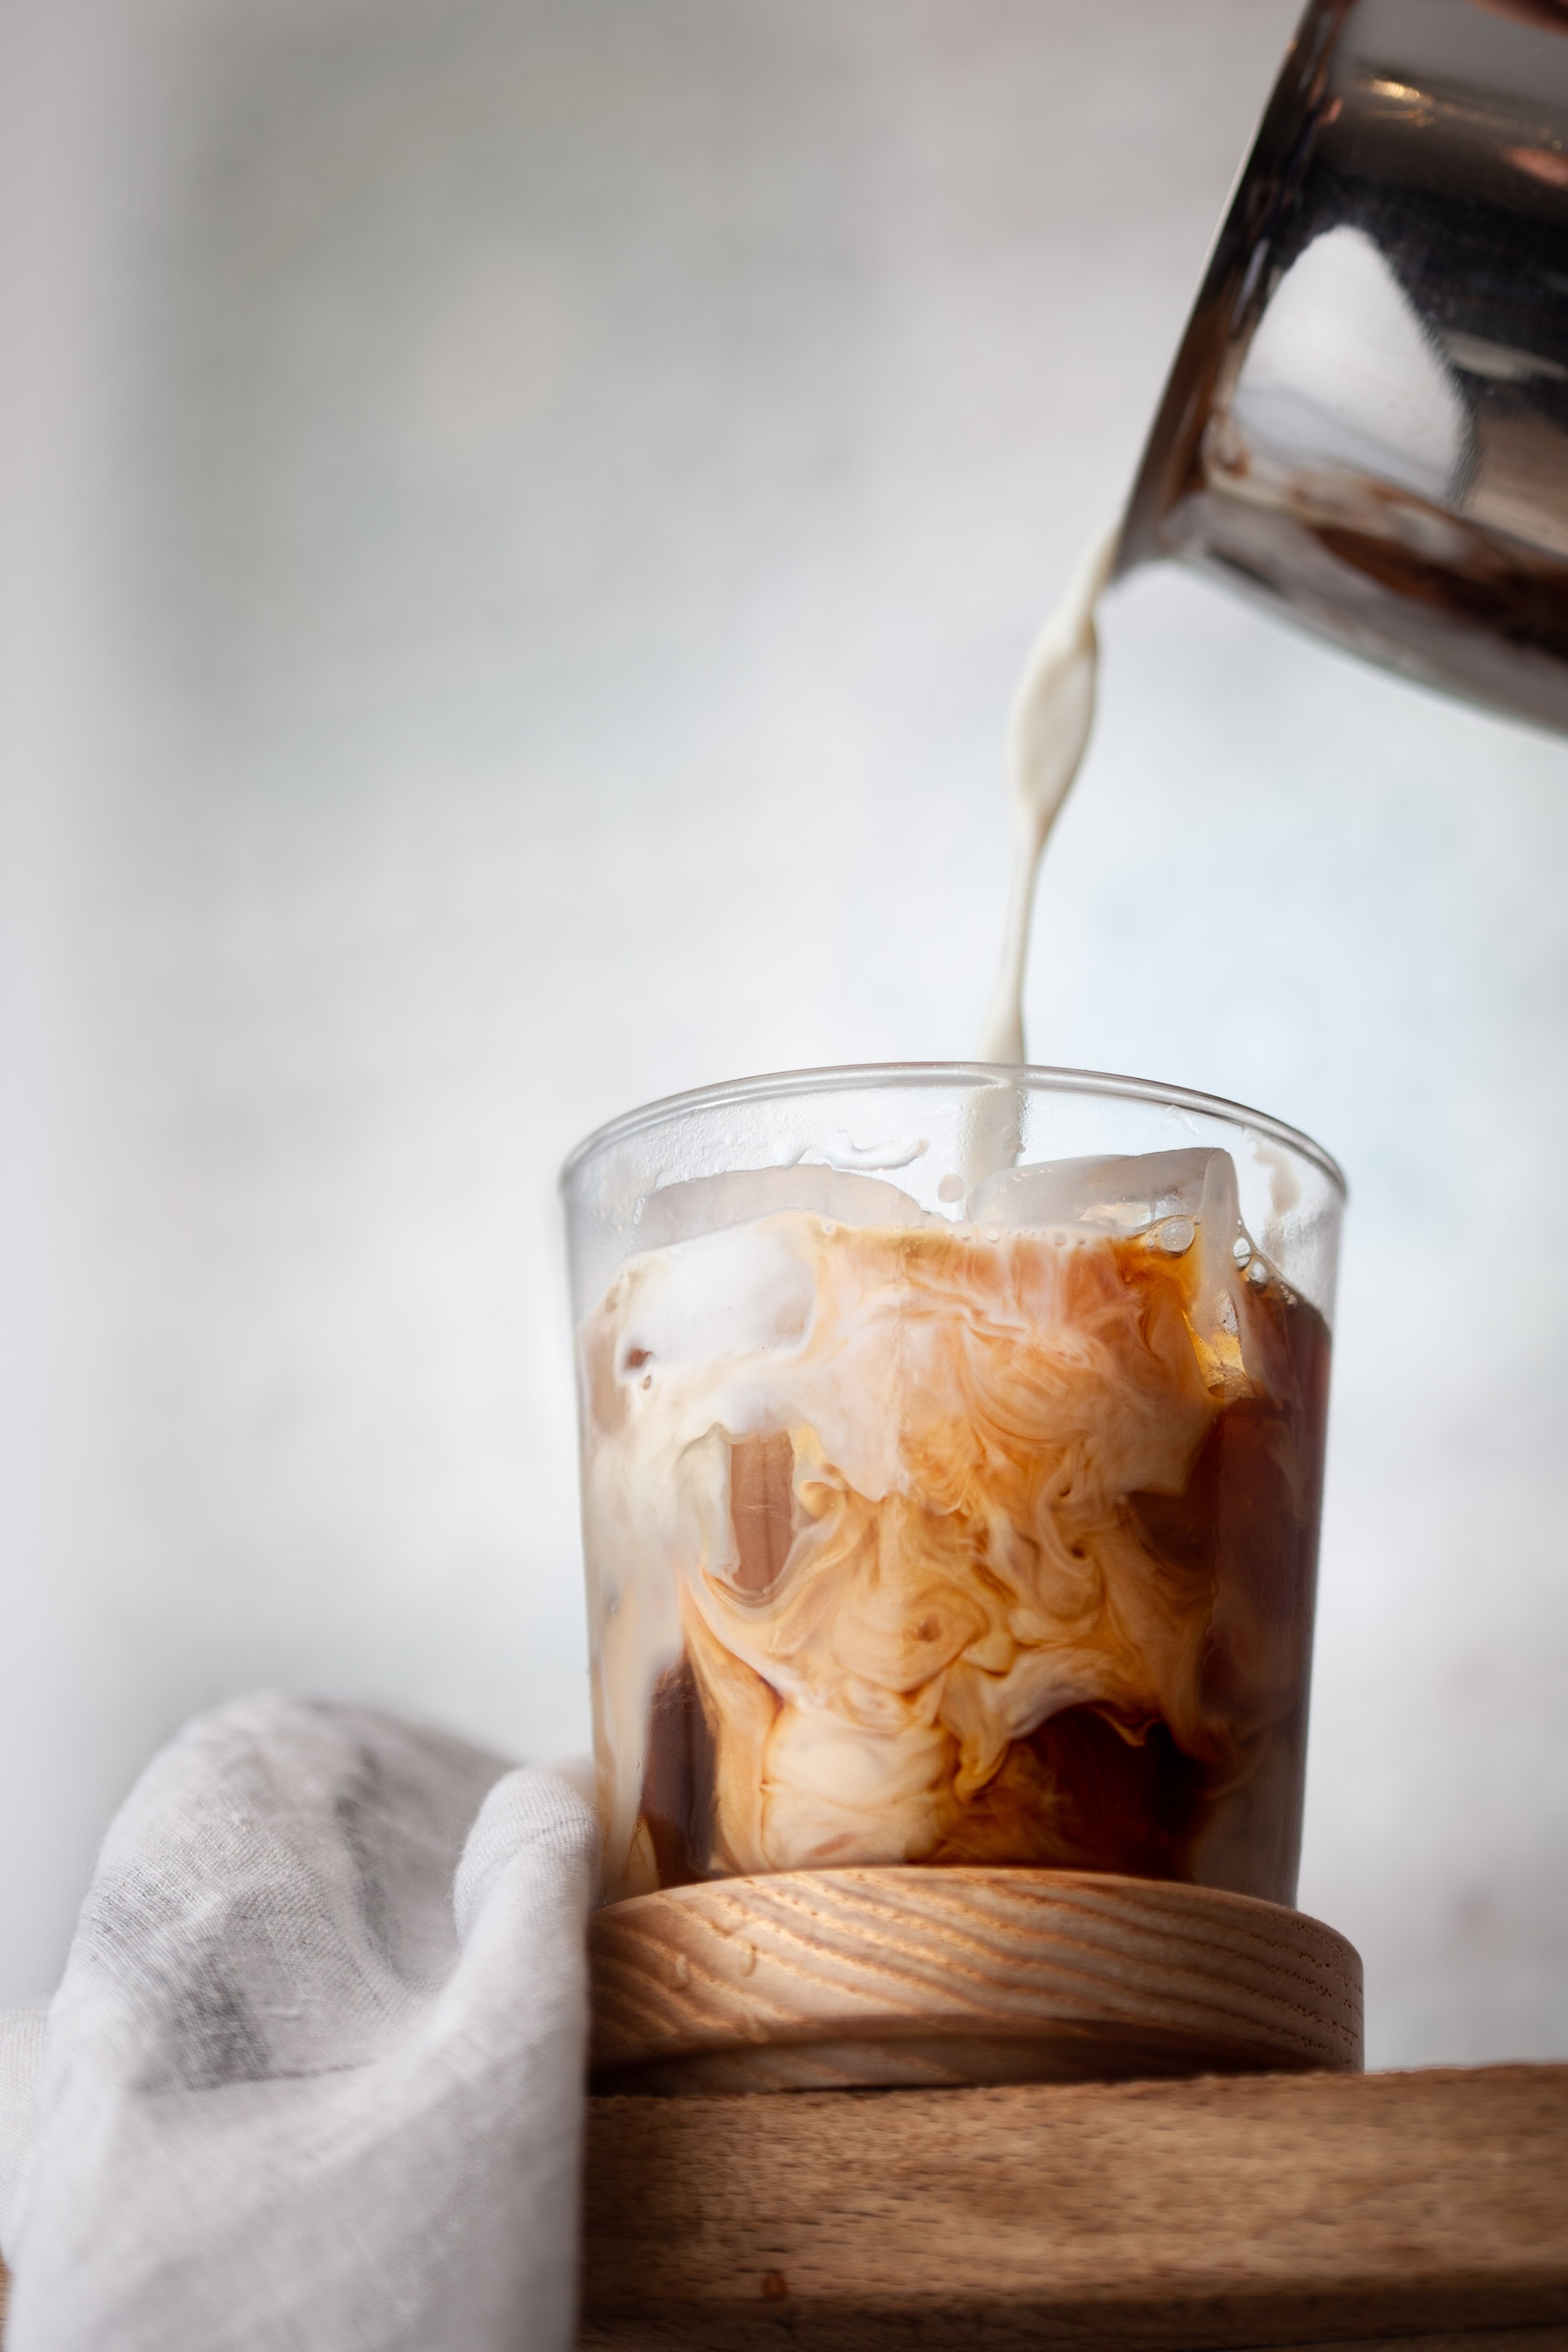 Starbucks Copycat Iced Shaken Espresso (3 Ways!)